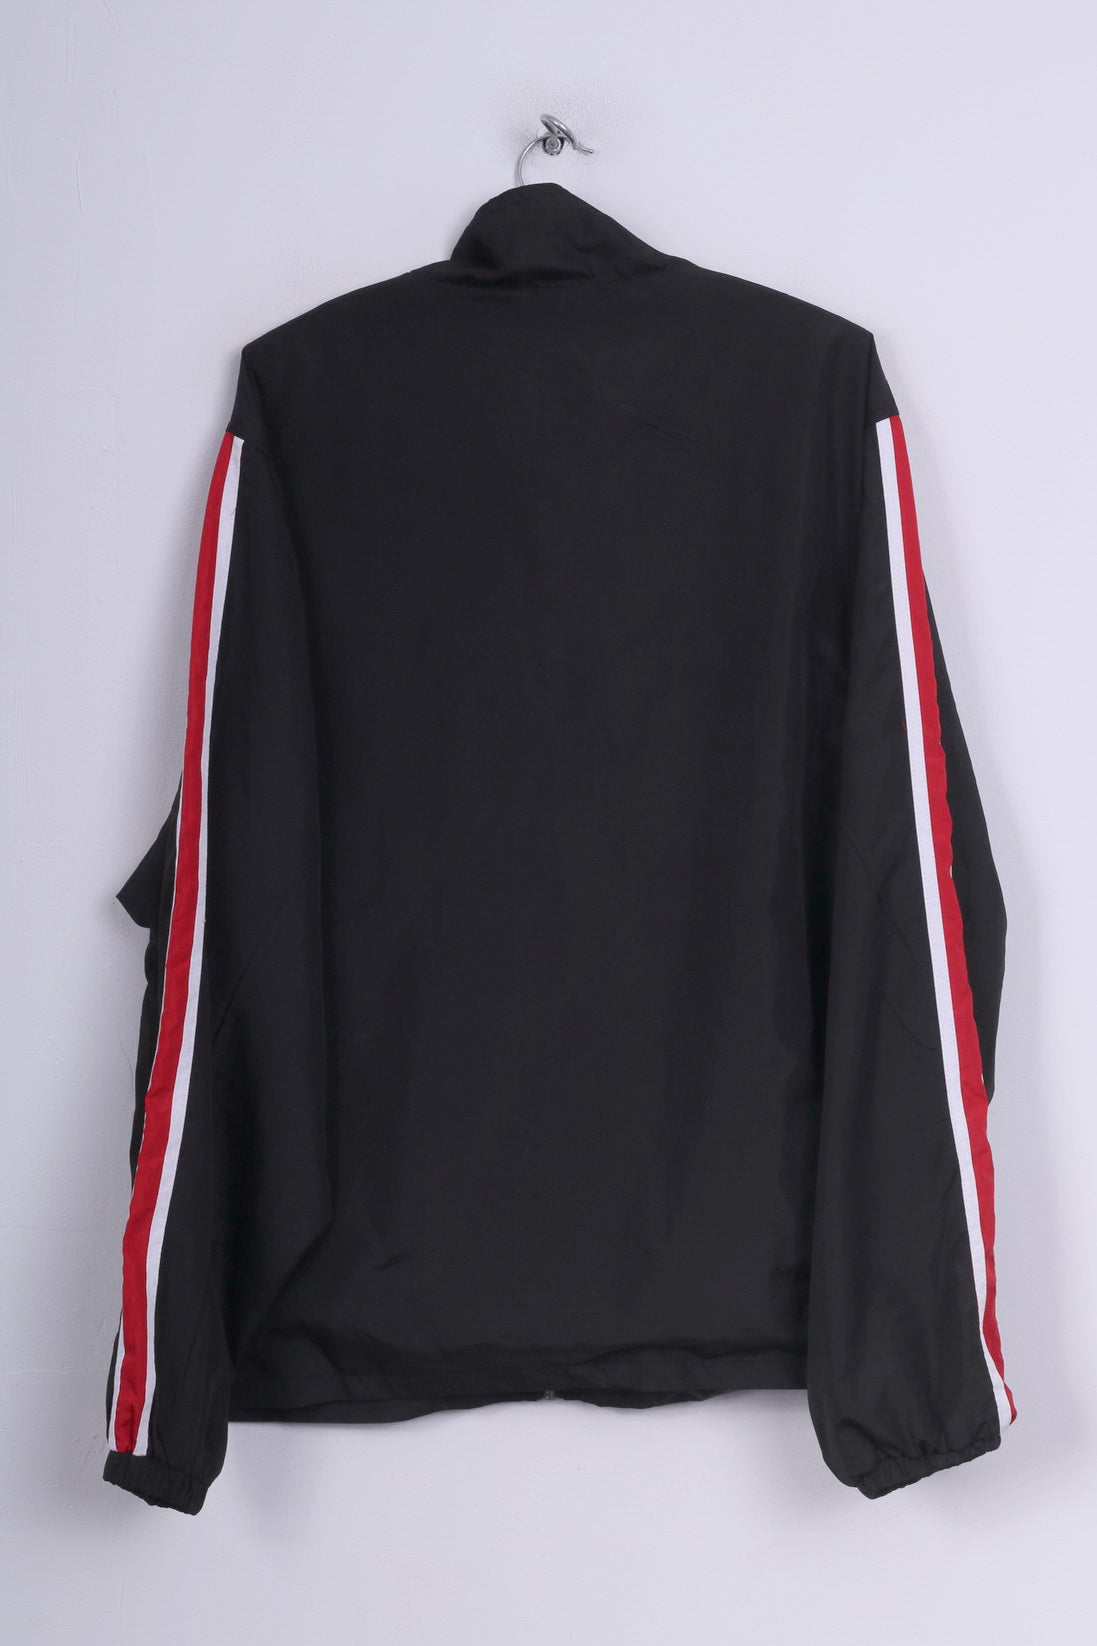 Trekker Sport Mens XL Lightweight Jacket Black Sportswear Full Zipper Vintage